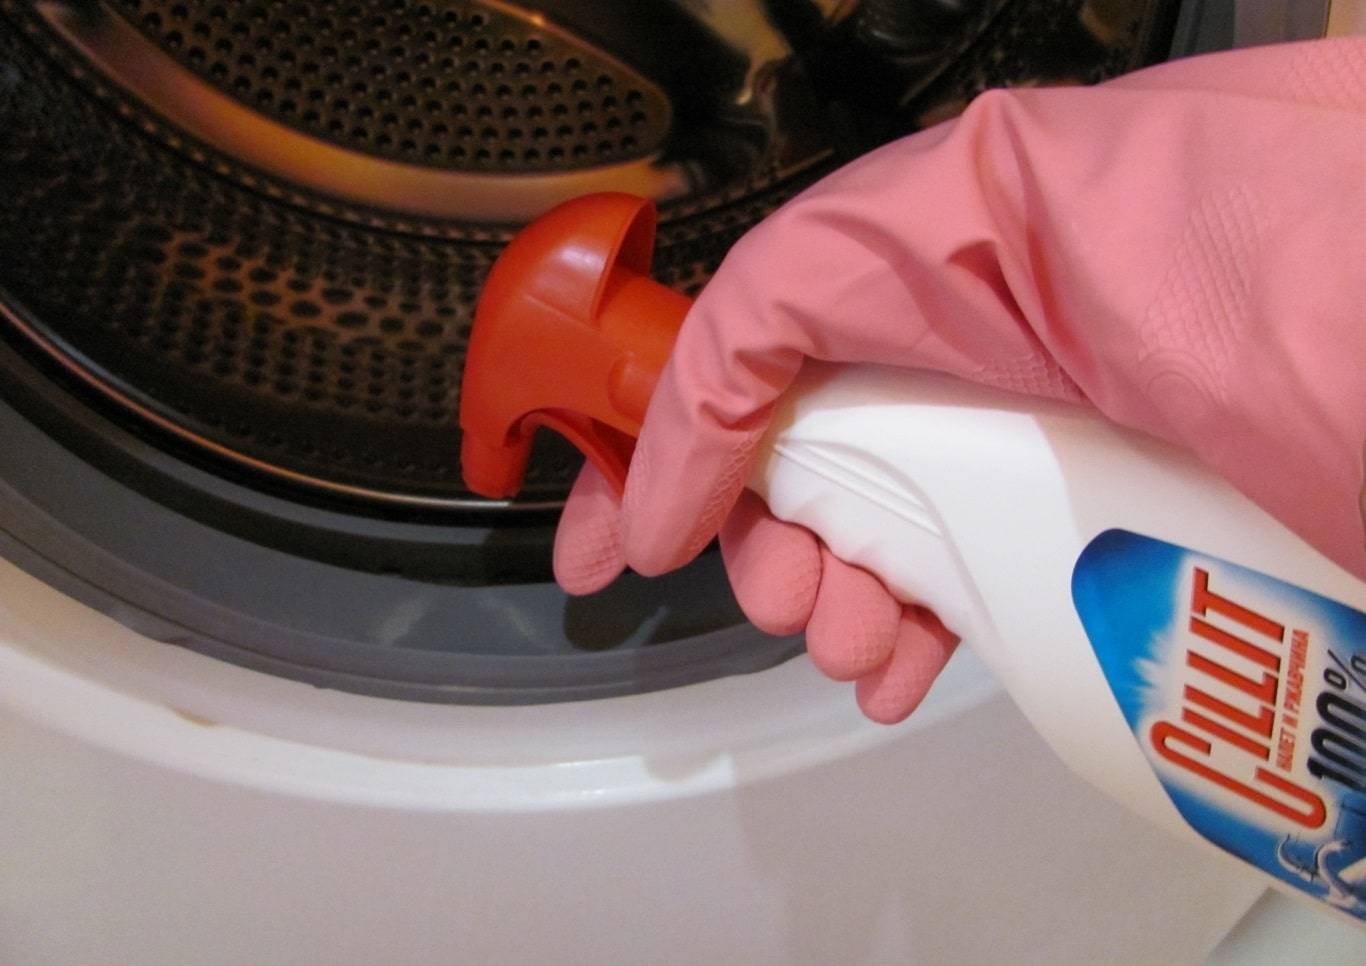 Запах в стиральной машинке: 5 эффективных способов борьбы